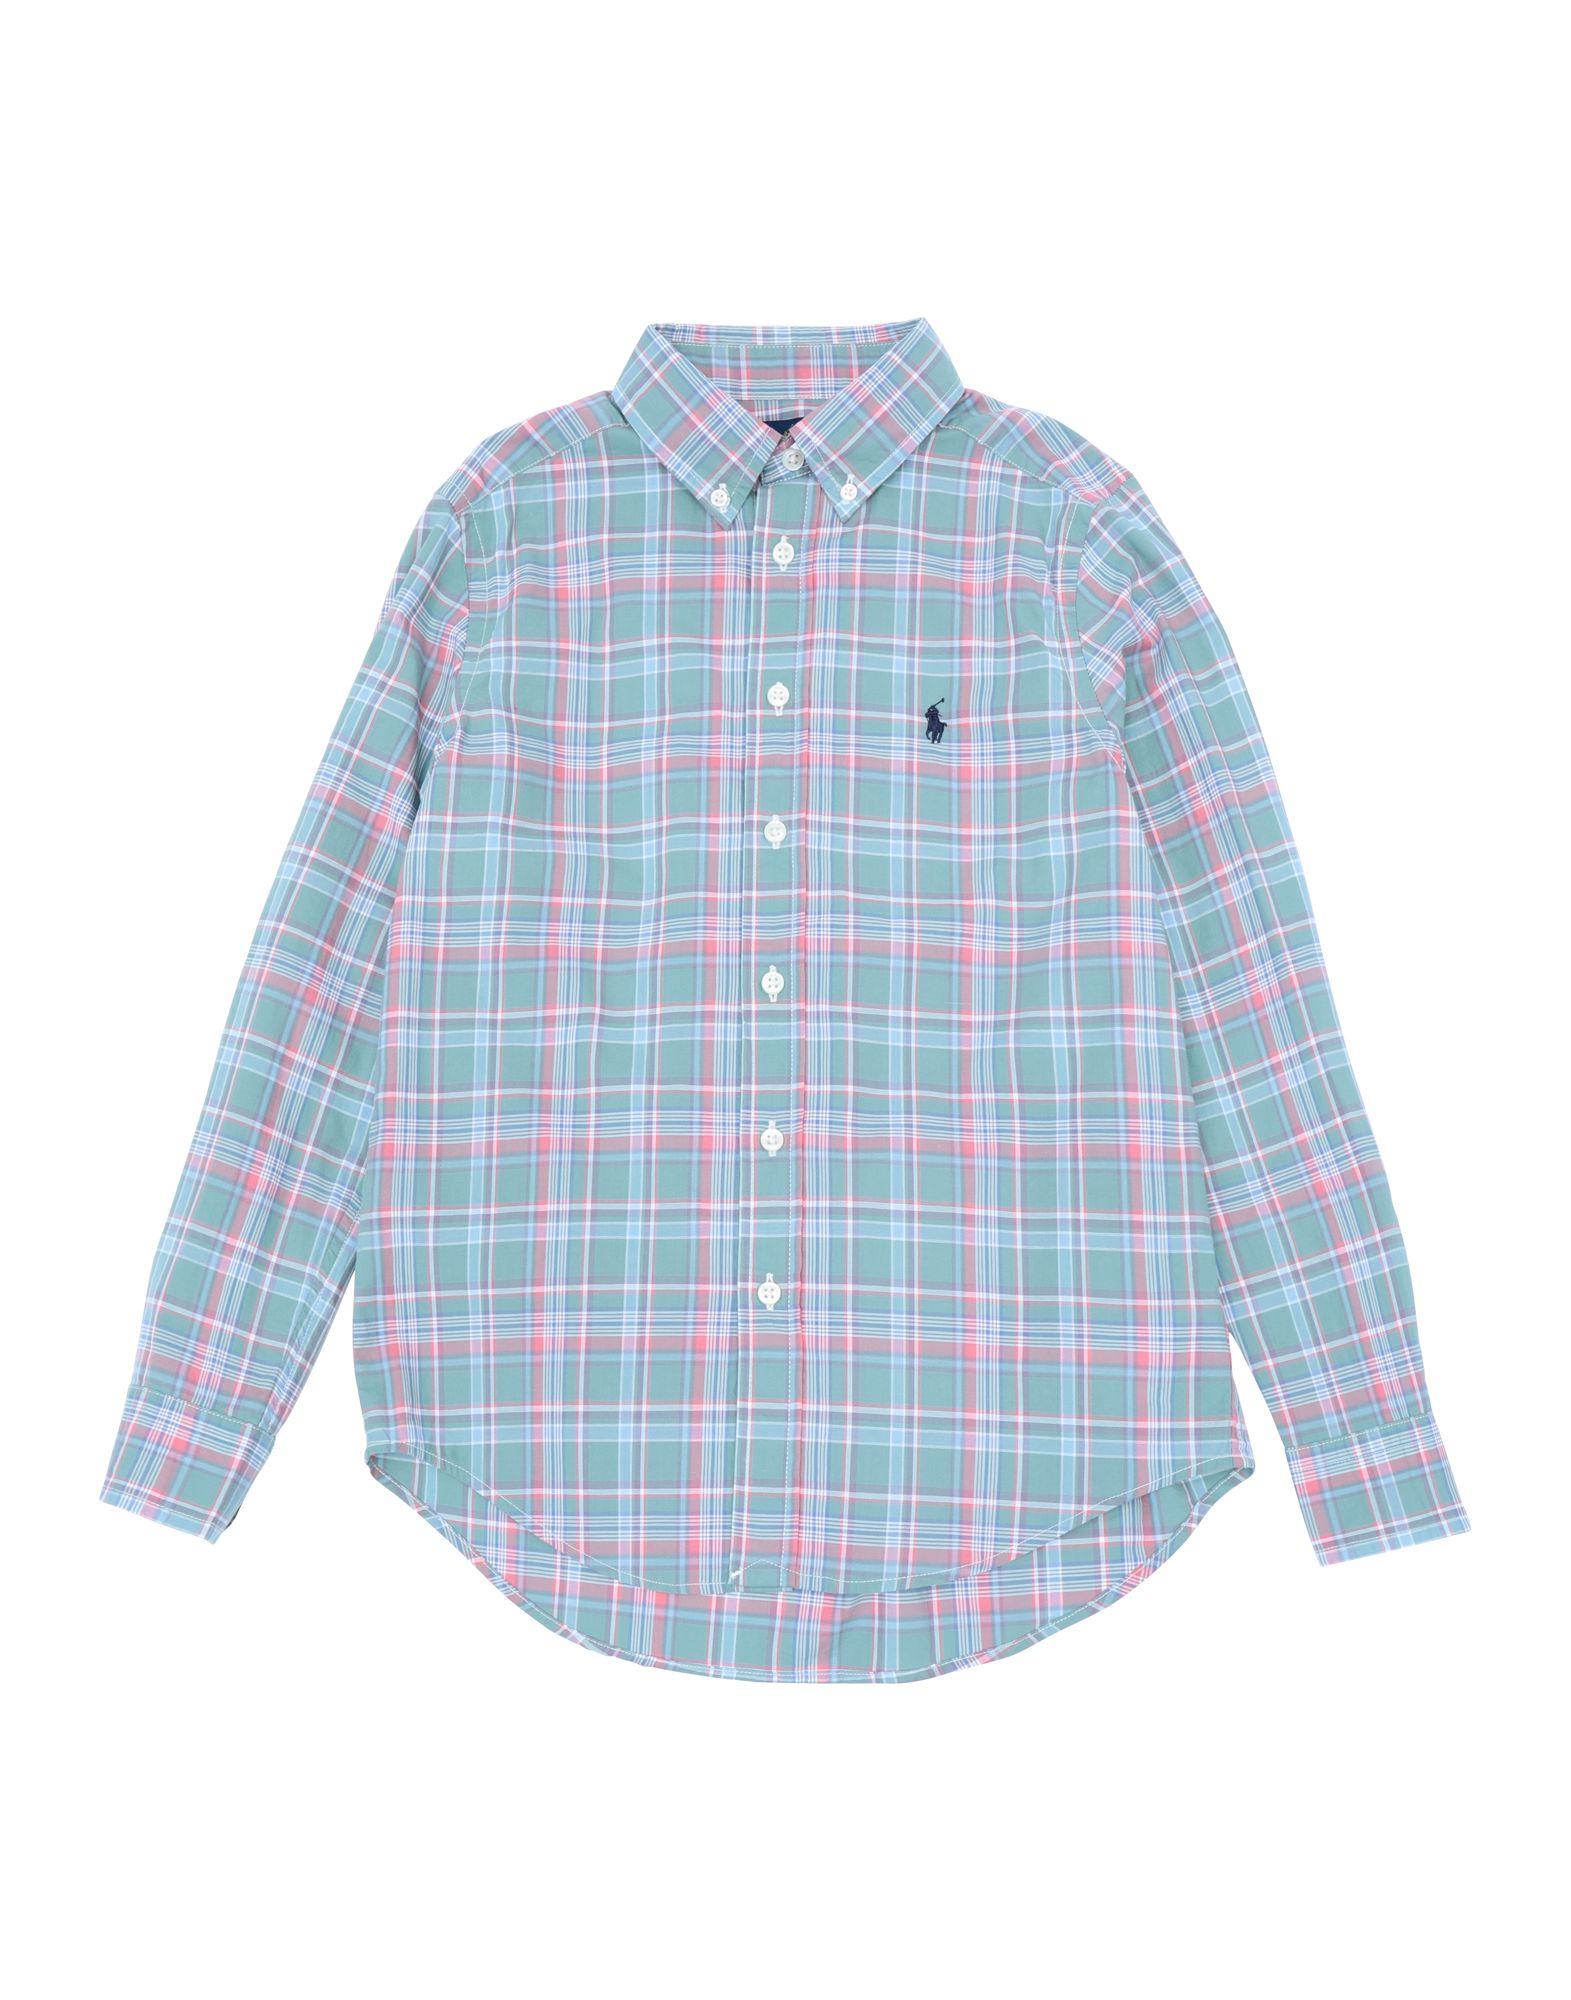 ラルフ・ローレン(Ralph Lauren) ボーイズ メンズシャツ・ワイシャツ | 通販・人気ランキング - 価格.com